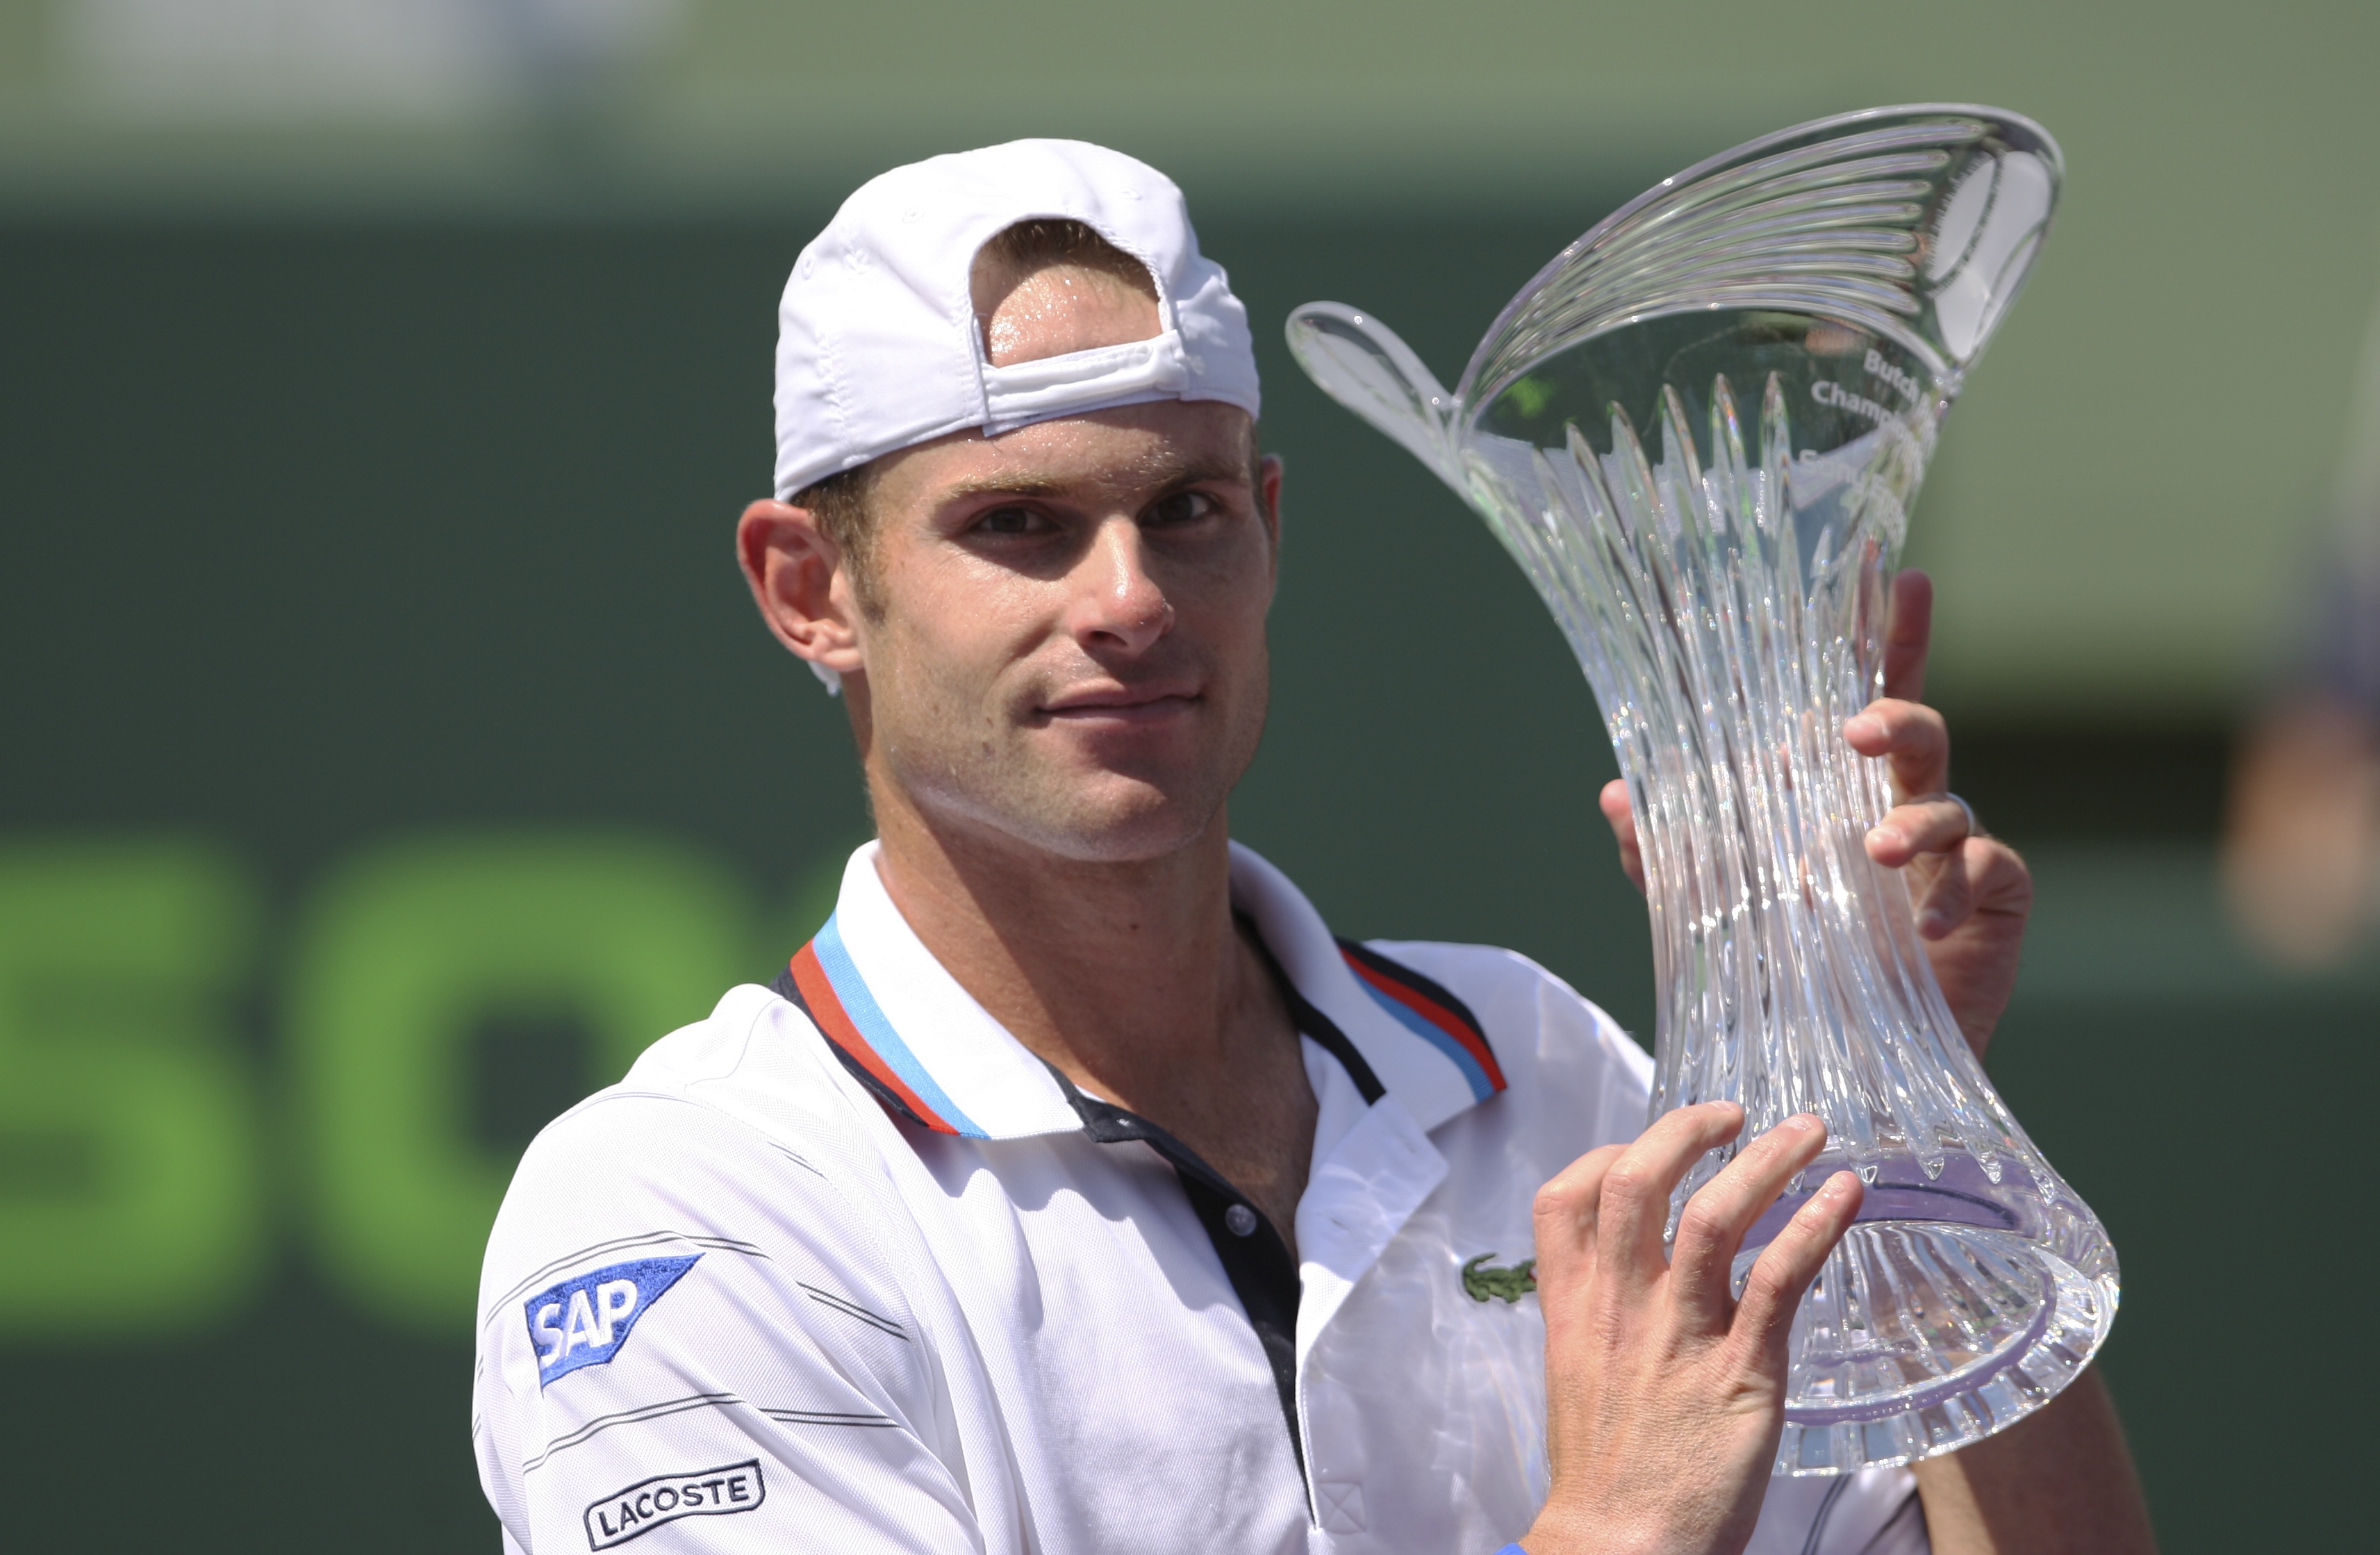 Miami Mastersturnering, Tennis, ATP, Andy Roddick, Tomas Berdych